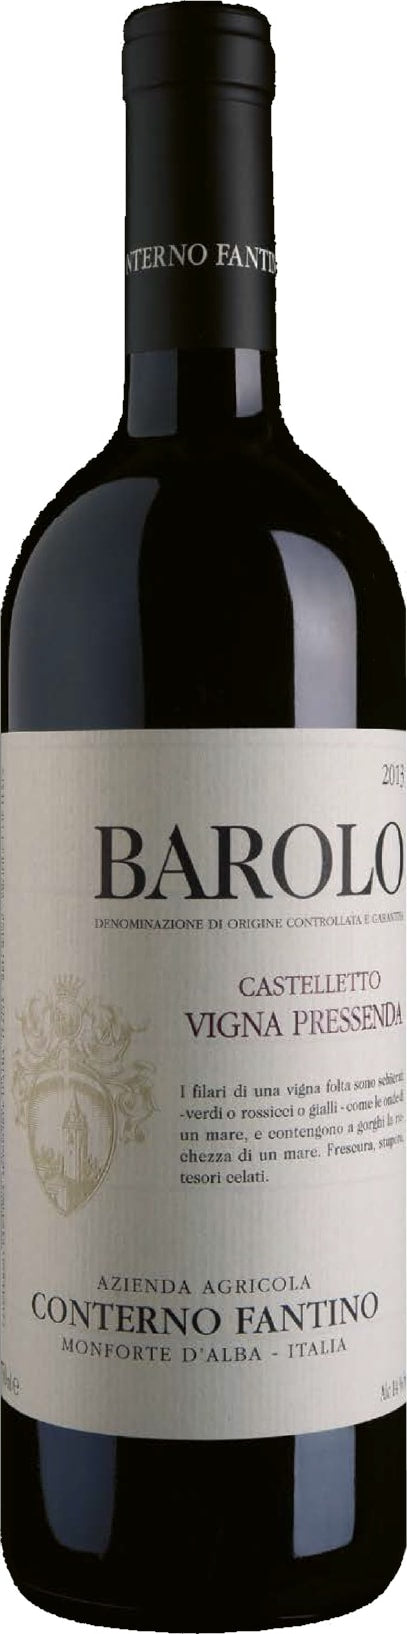 Conterno Fantino Barolo Castelletto Vigna Pressenda 2017 75cl - Buy Conterno Fantino Wines from GREAT WINES DIRECT wine shop